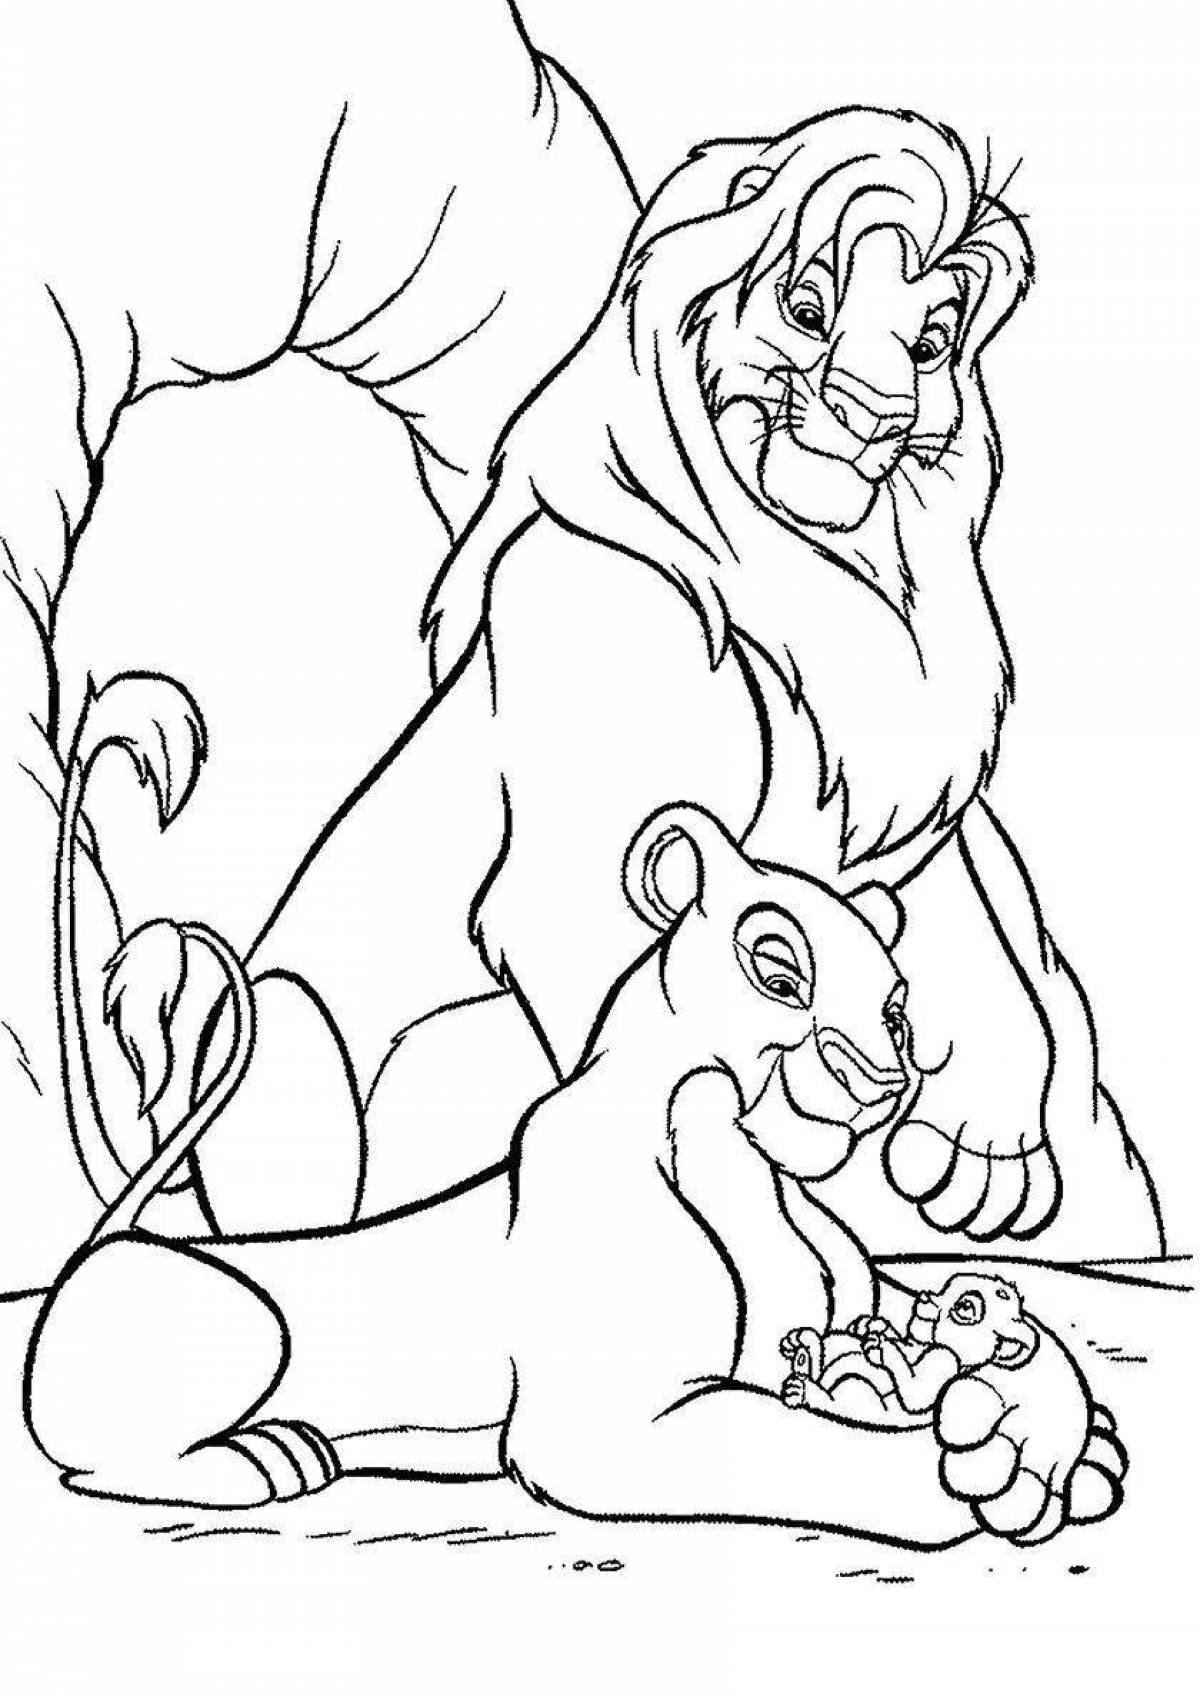 Simba and Nala coloring while playing